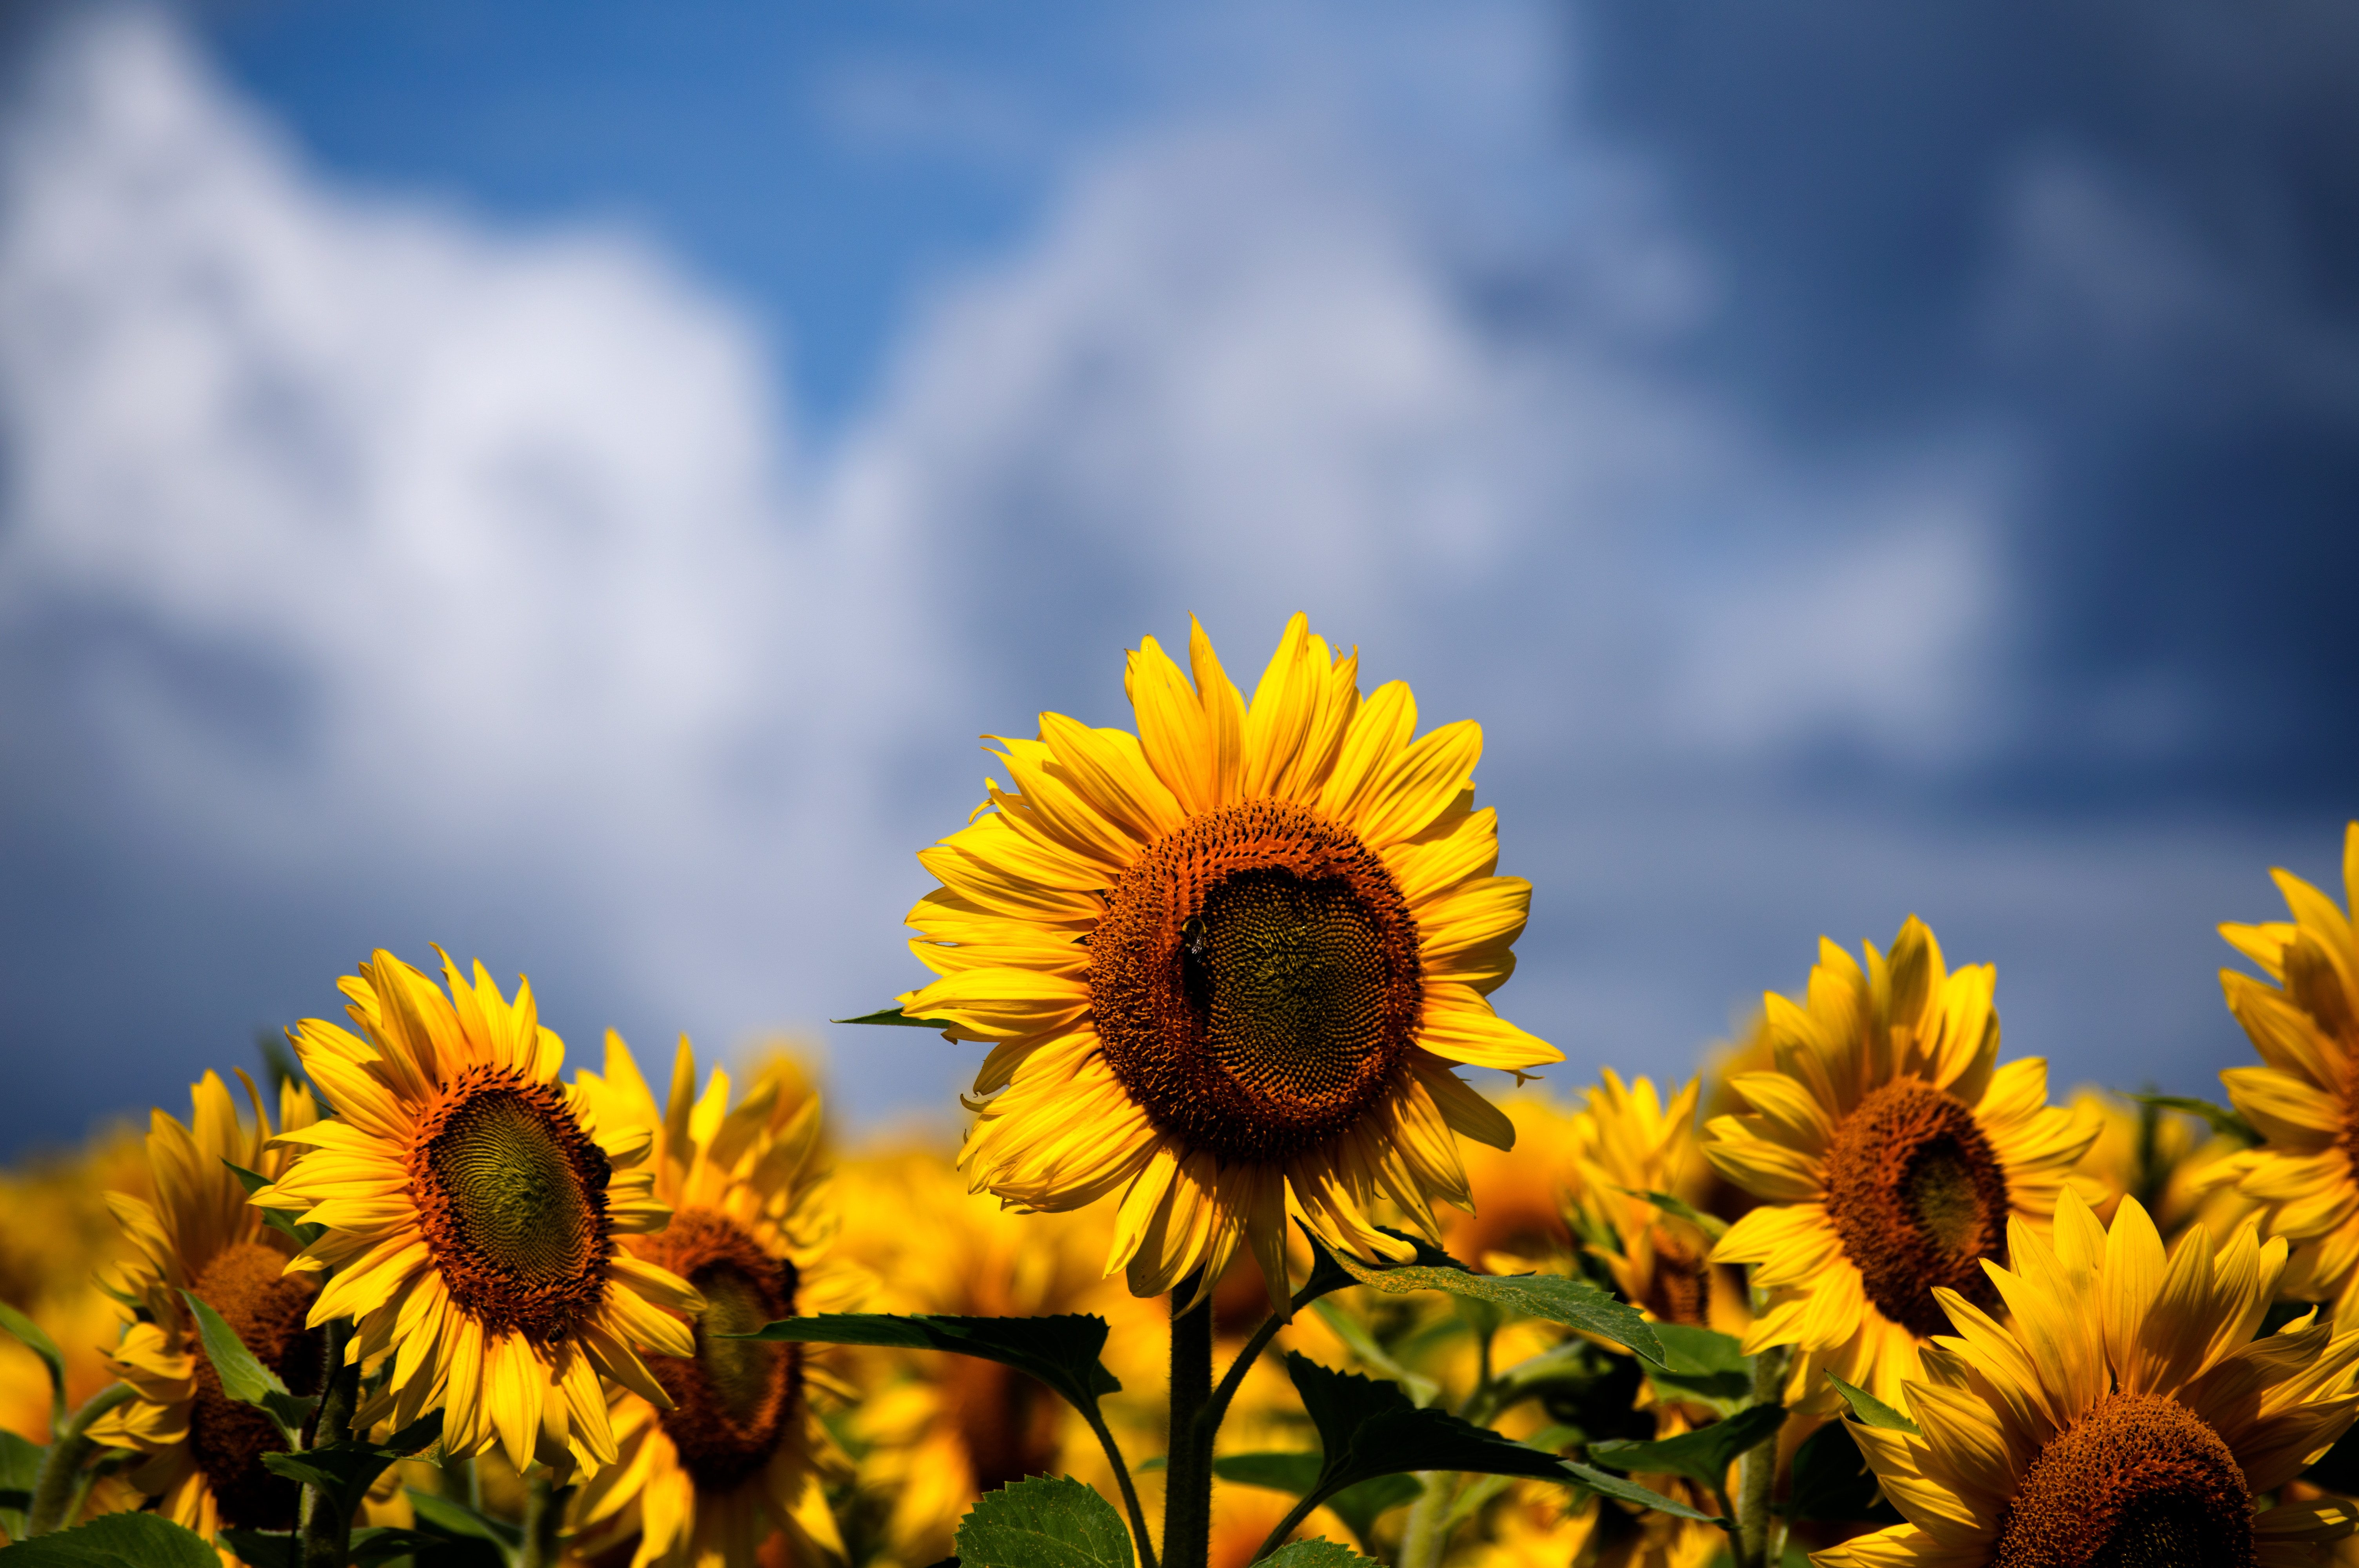 Sunflowers Iphone Wallpaper Idrop News